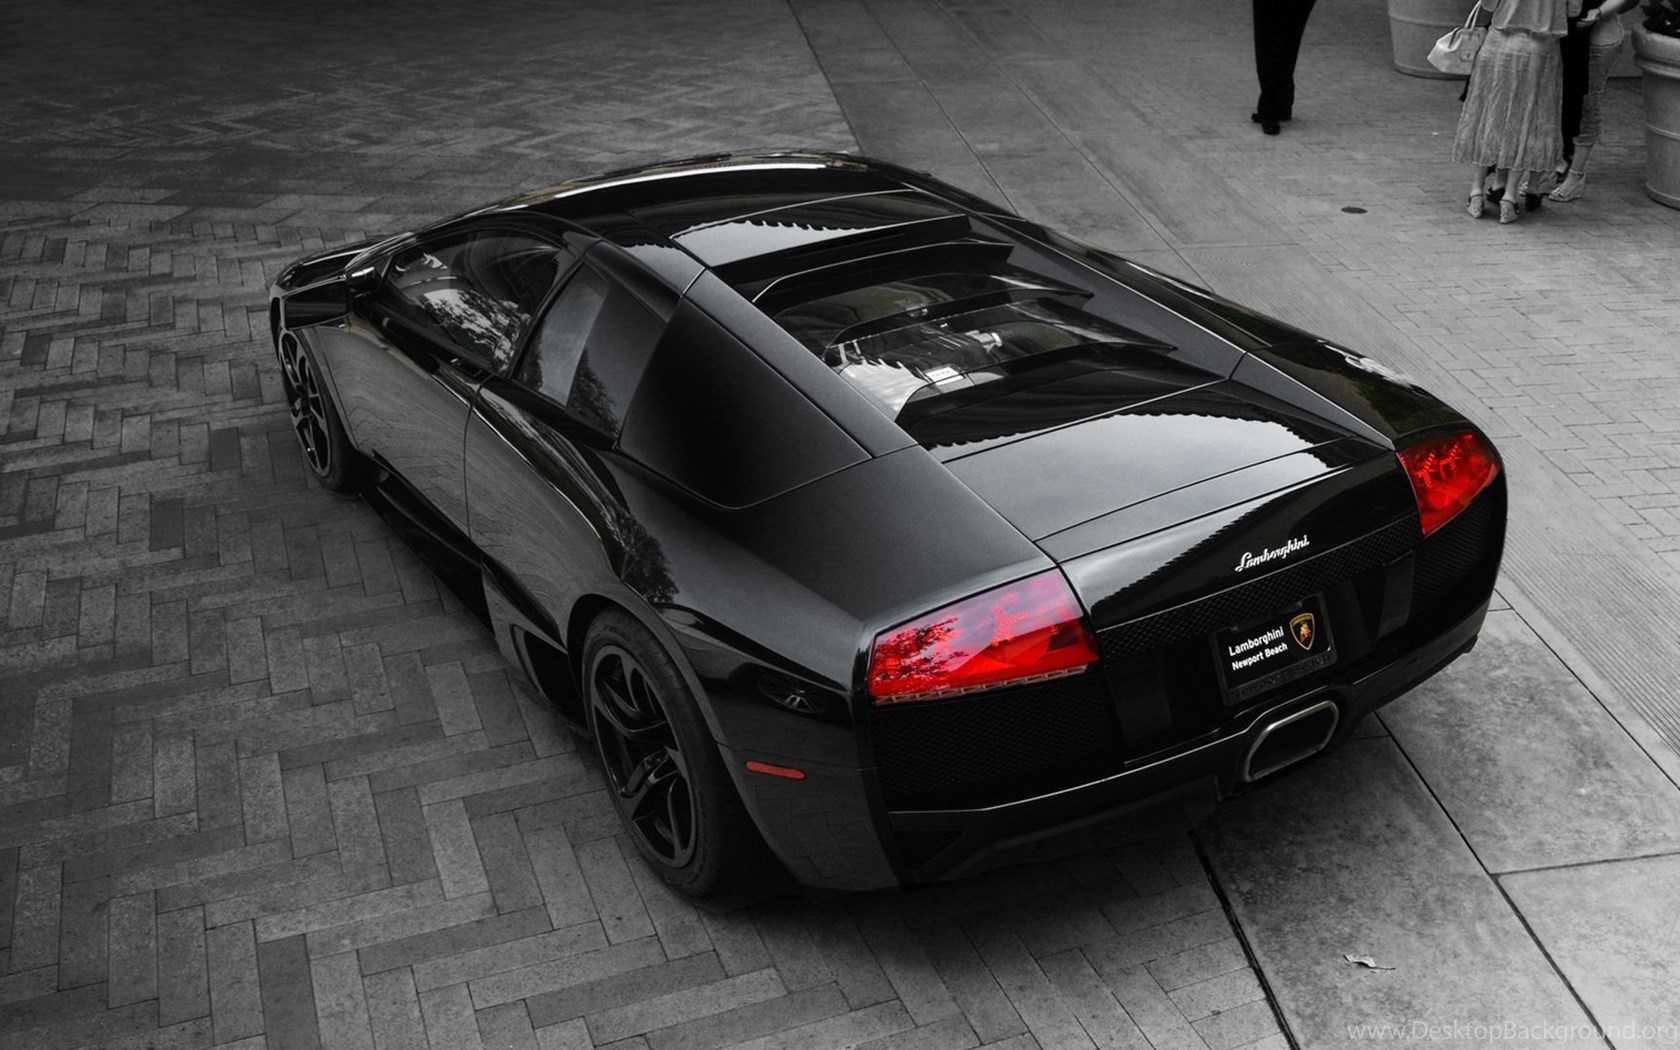 Black Lamborghini Murcielago Lp640 Wallpapers Desktop Background Images, Photos, Reviews